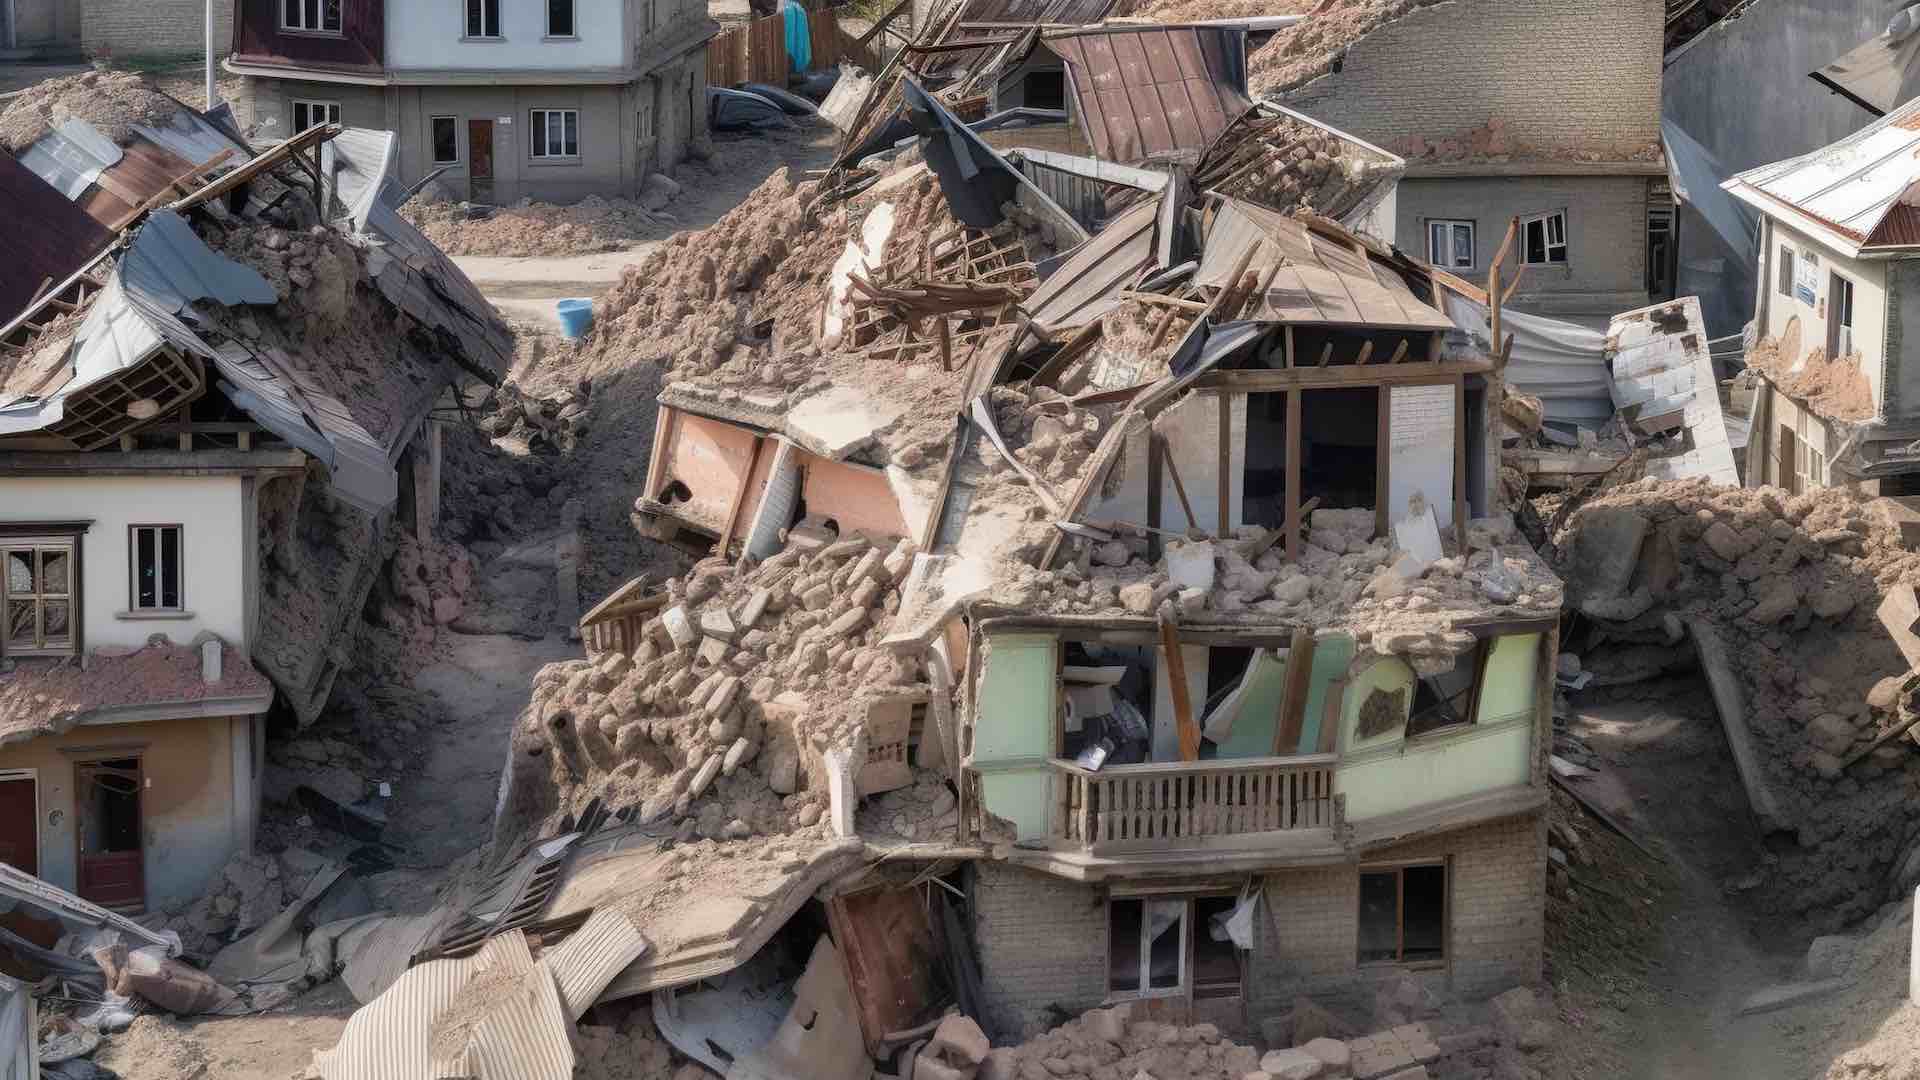 उत्तर-पश्चिम चीनच्या भूकंपात १४९ जणांचा मृत्यू झाला असून दोन बेपत्ता आहेत